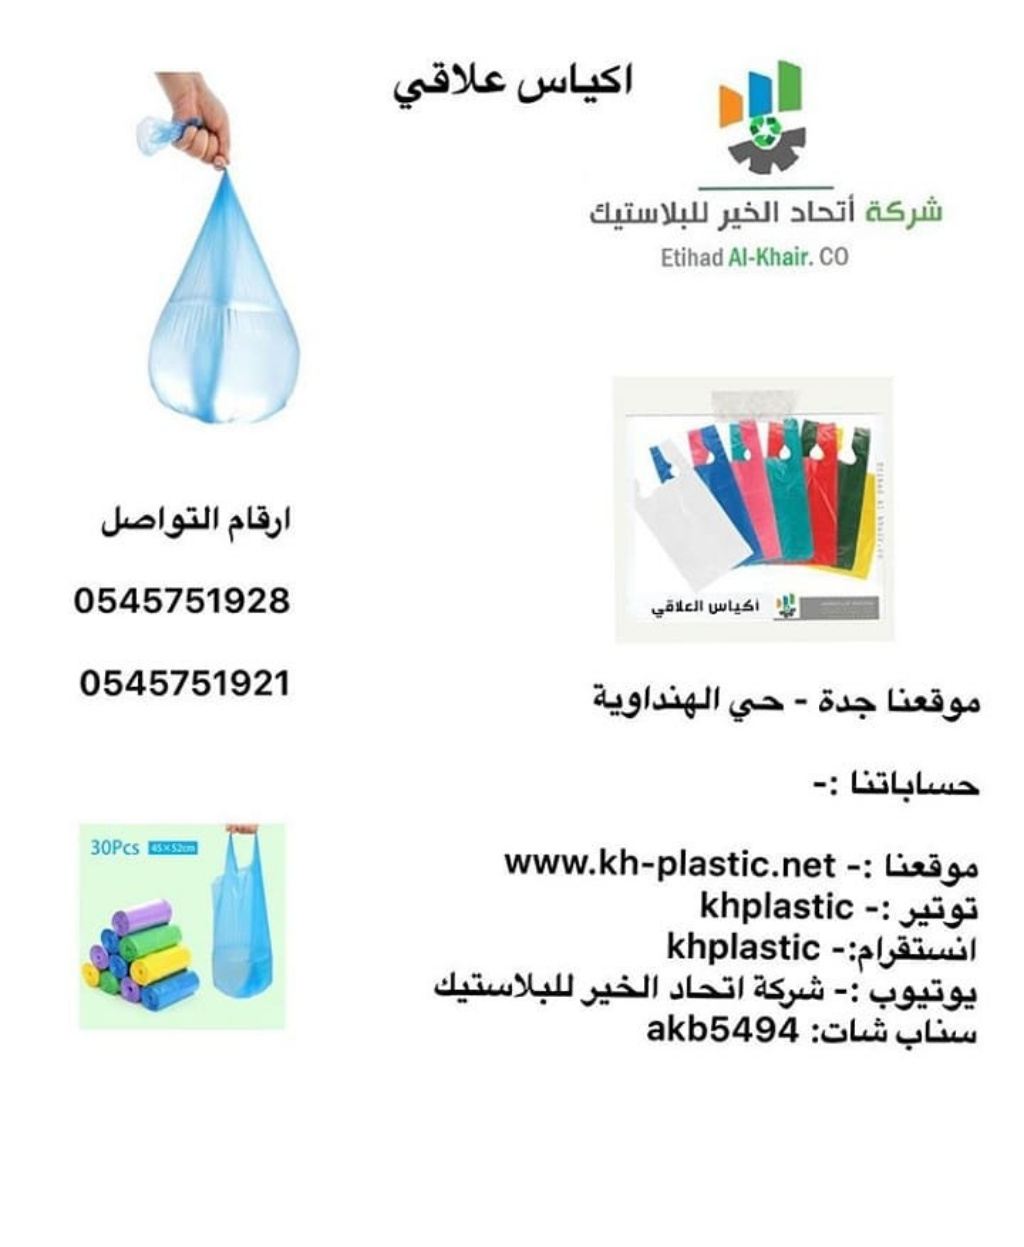 اكياس بلاستيك للبيع من شركة اتحاد الخير للبلاستيك بأسعار مناسبه 0545751921 P_1706fej913